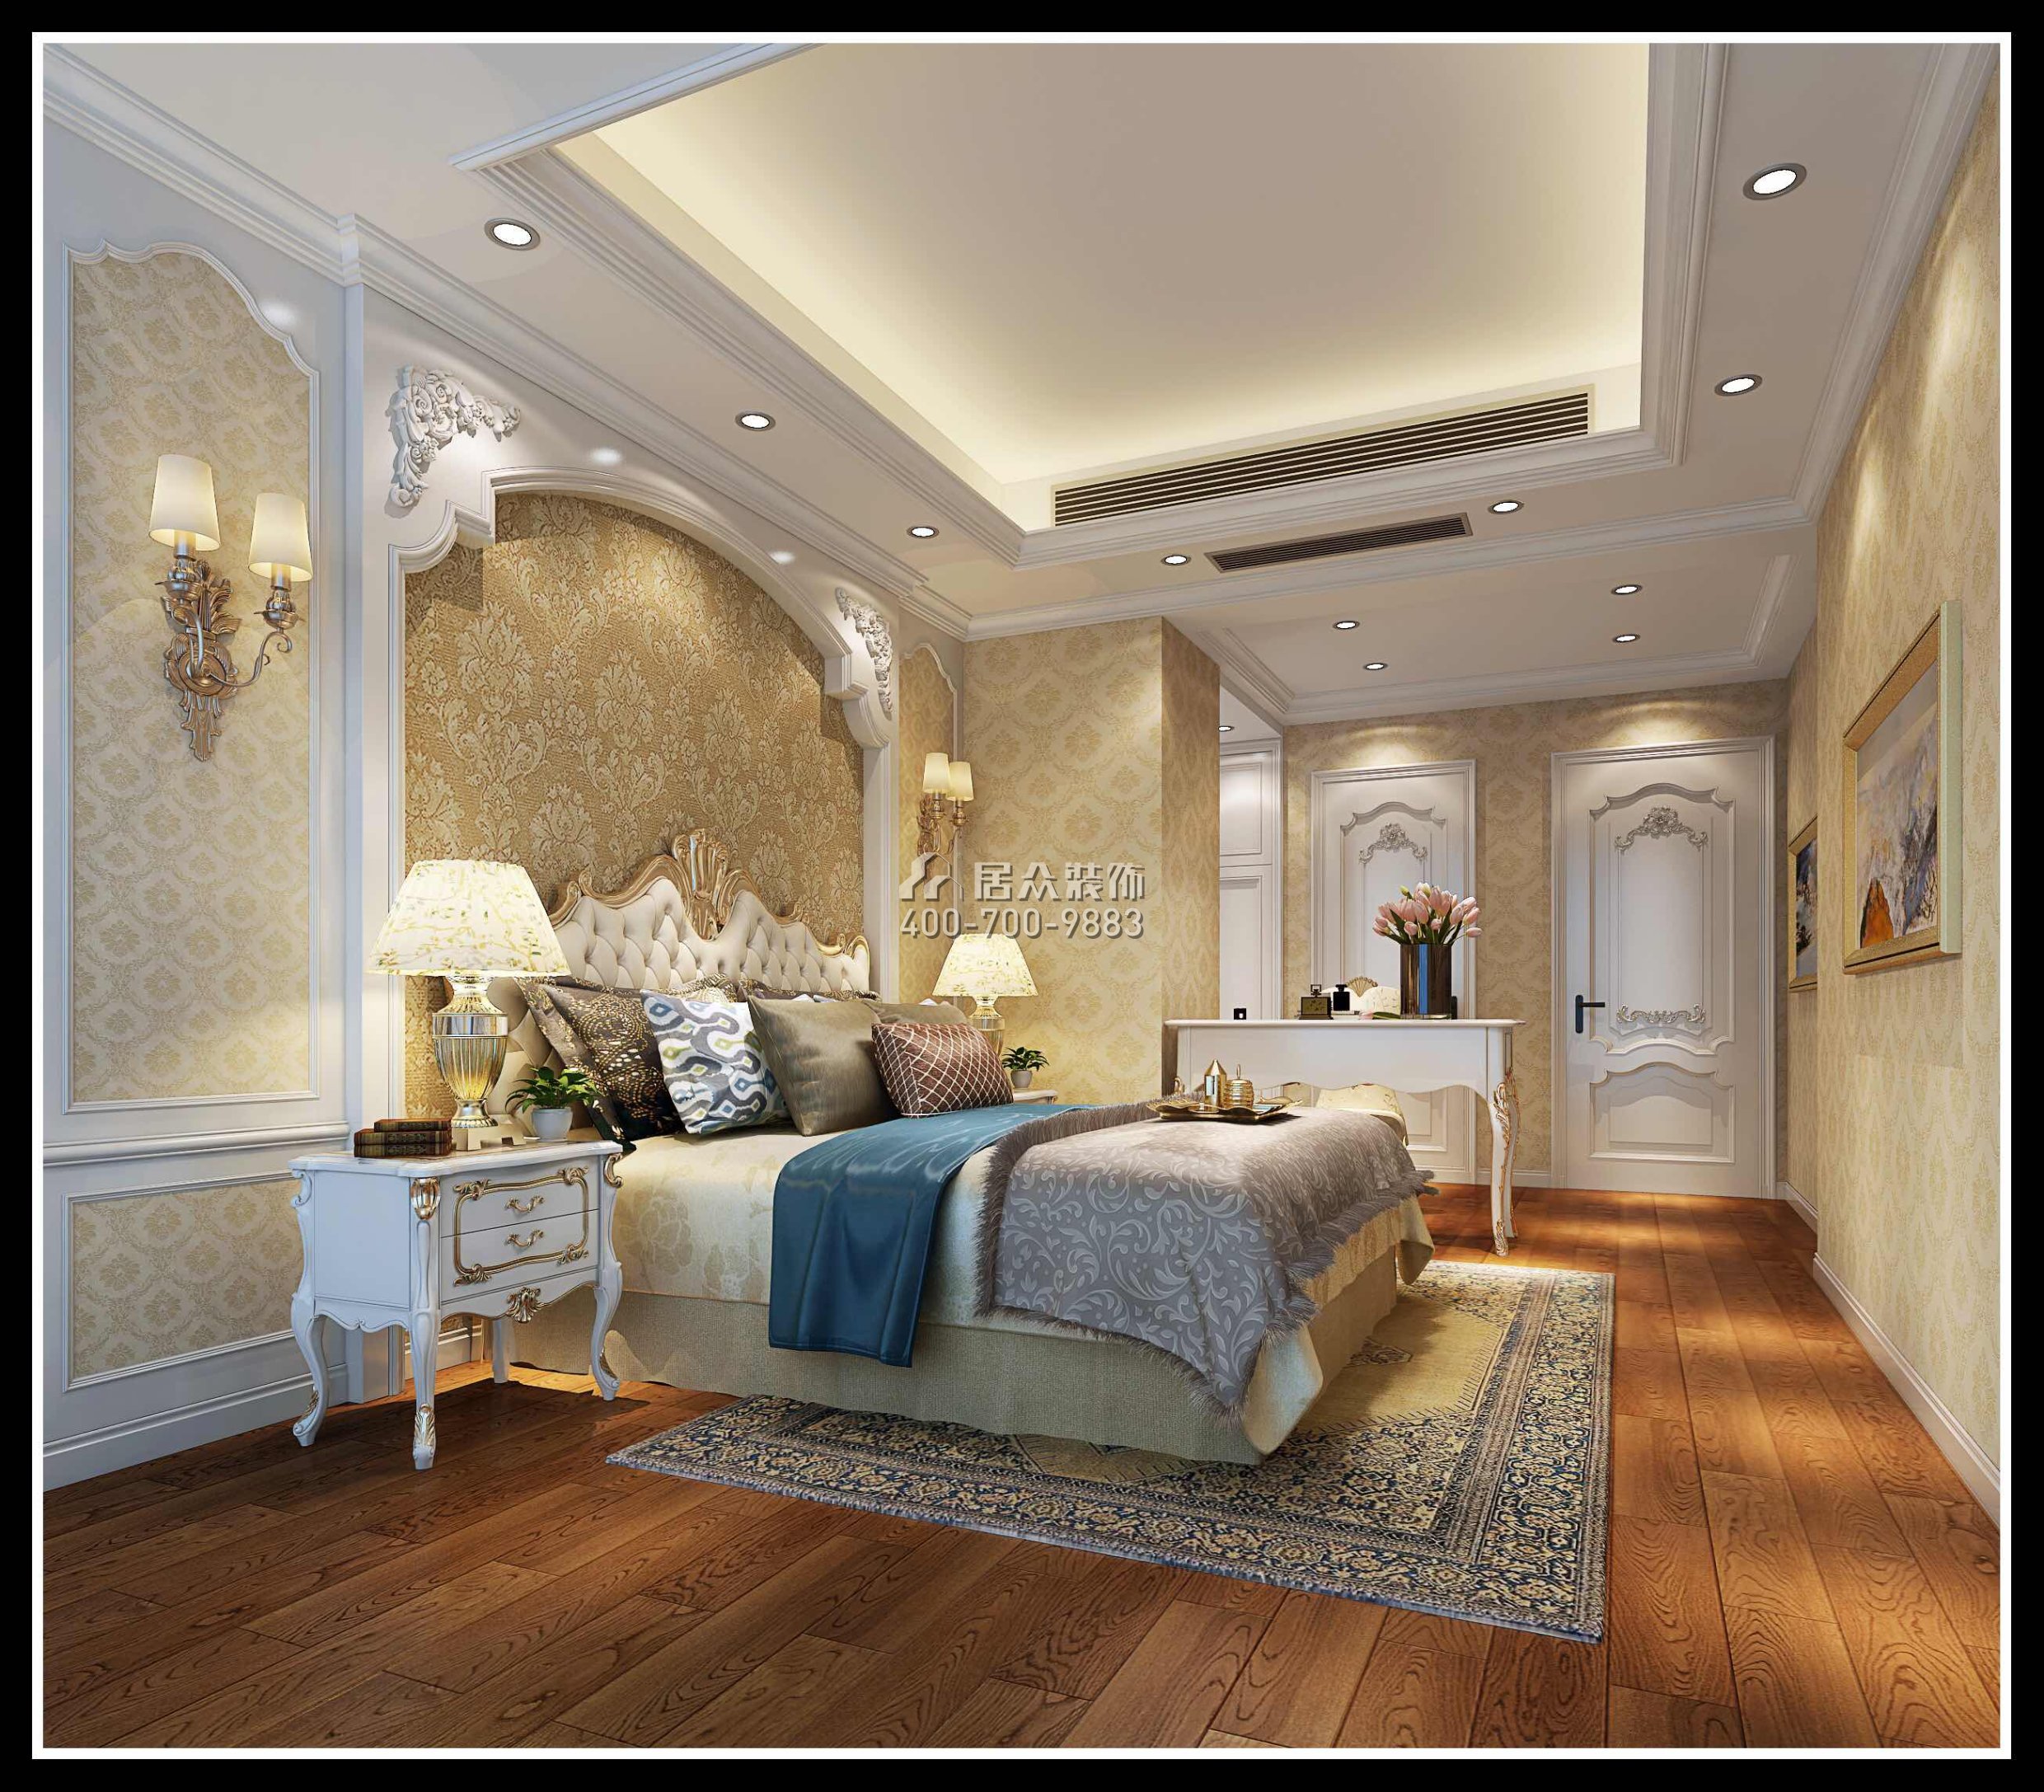 勤诚达140平方米欧式风格平层户型卧室装修效果图